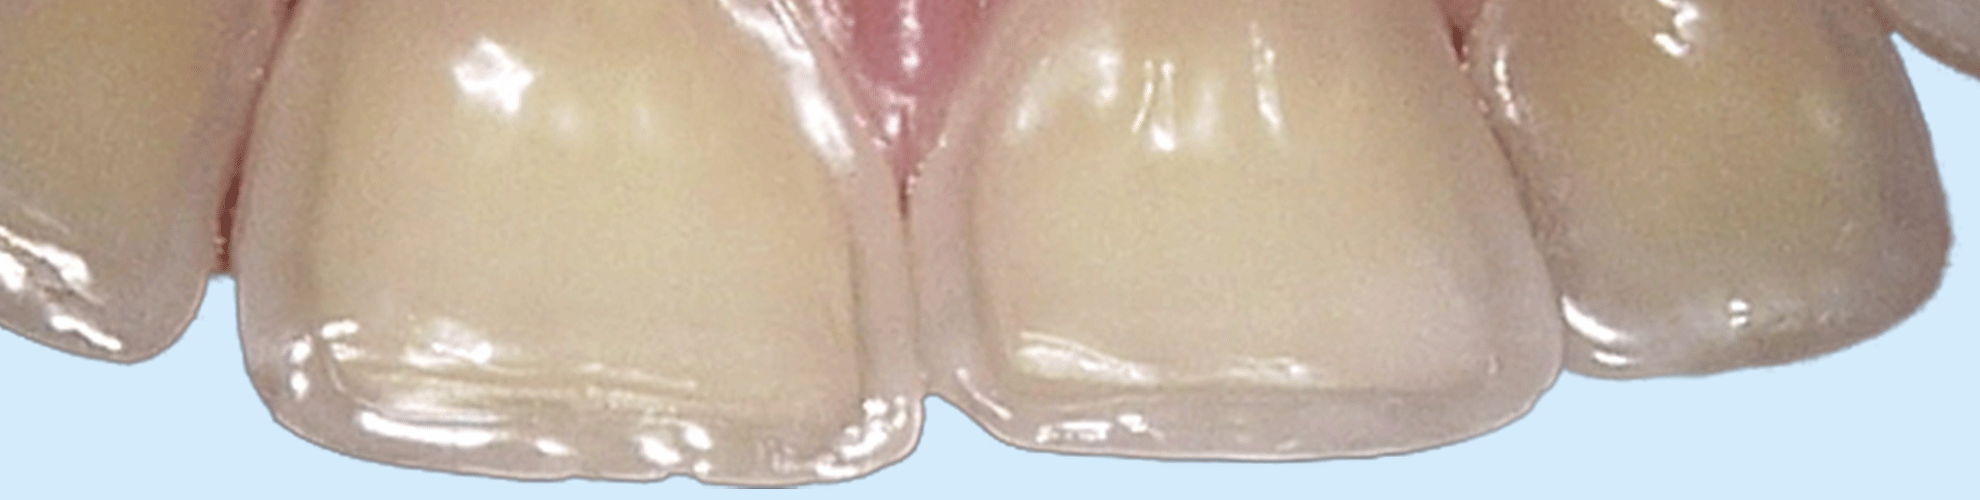 Syreskadede tænder